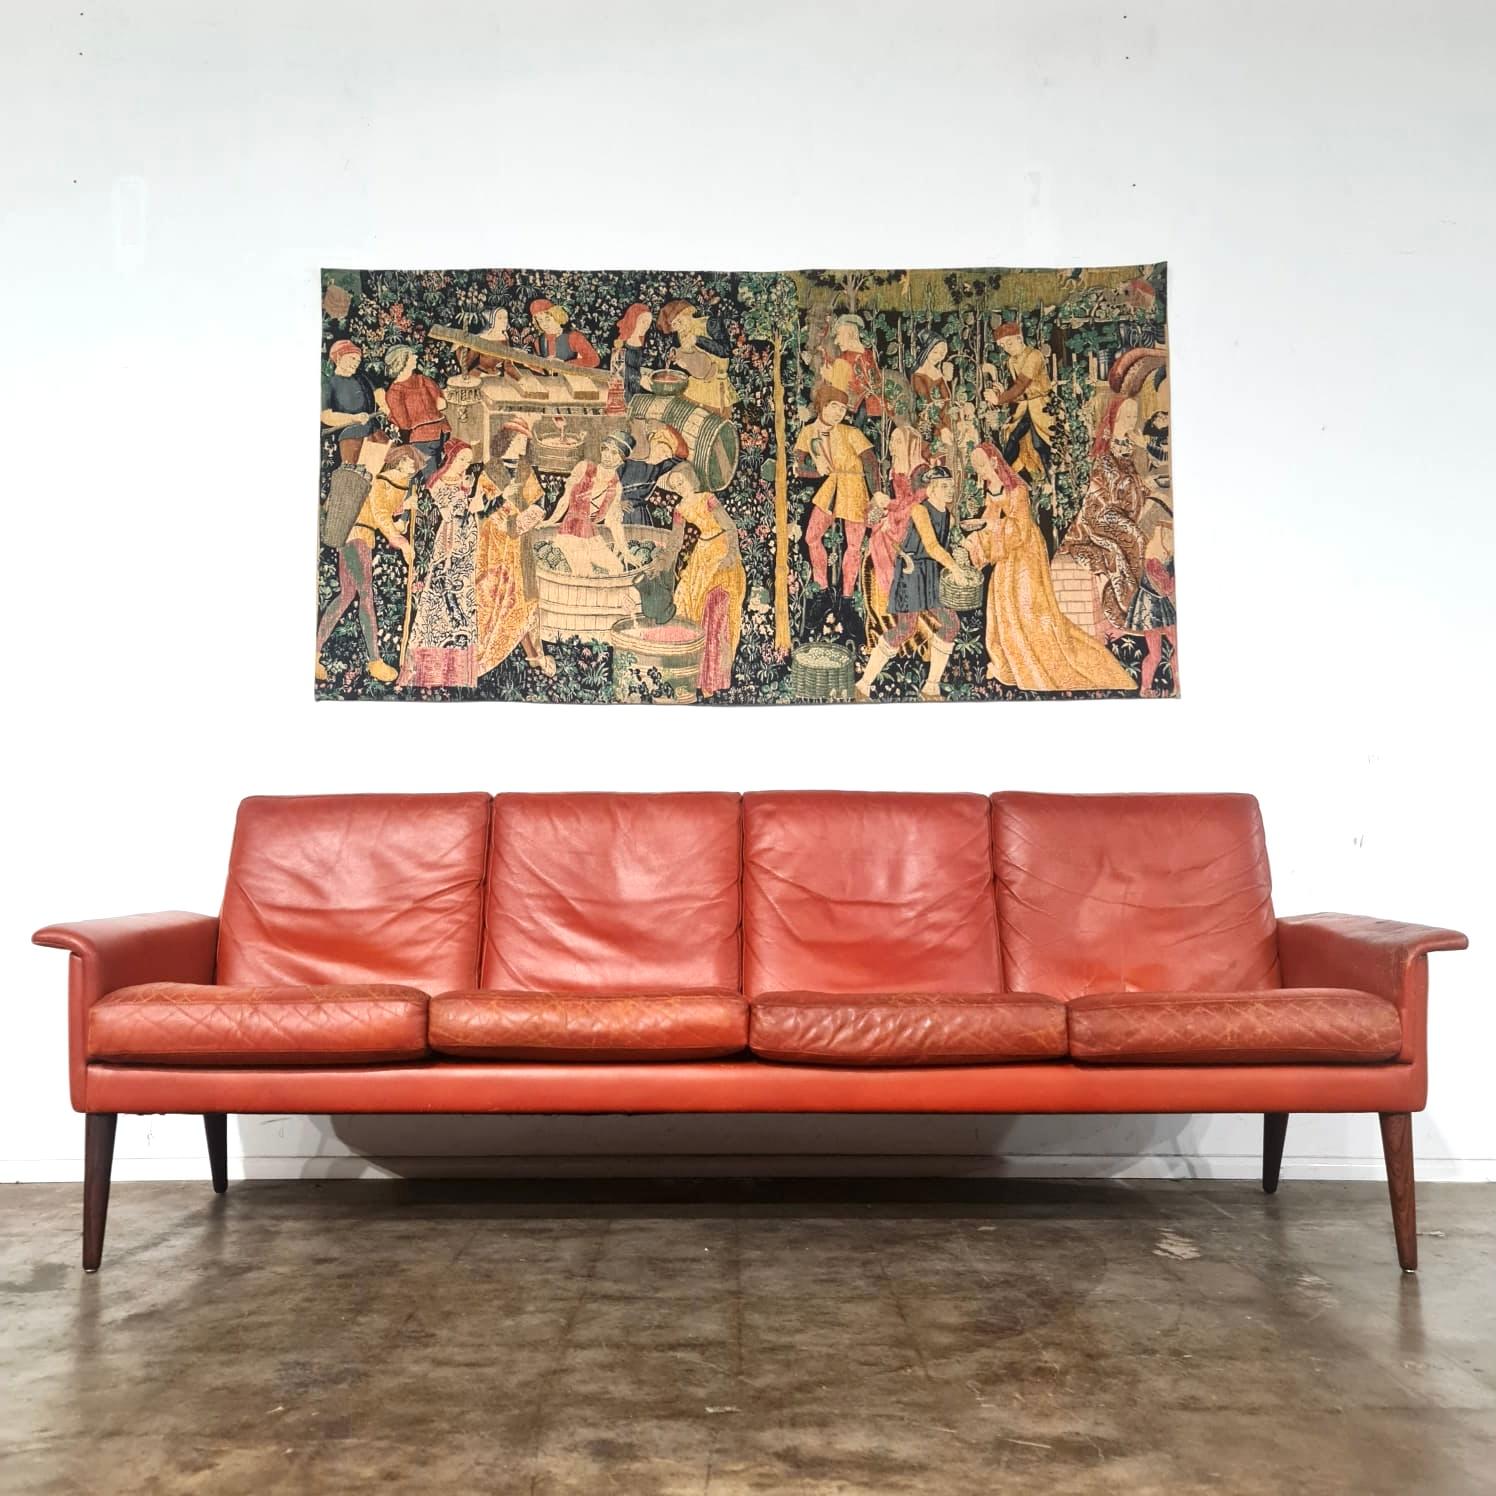 Mille Fleur Wandteppich mit einer Darstellung der Weinherstellung aus der Zeit um 1500. Das originale Meisterwerk hängt im Museum von Cluny in Paris. Dieses hochwertige, sehr detaillierte Stück wurde wahrscheinlich in den 1960er bis 70er Jahren